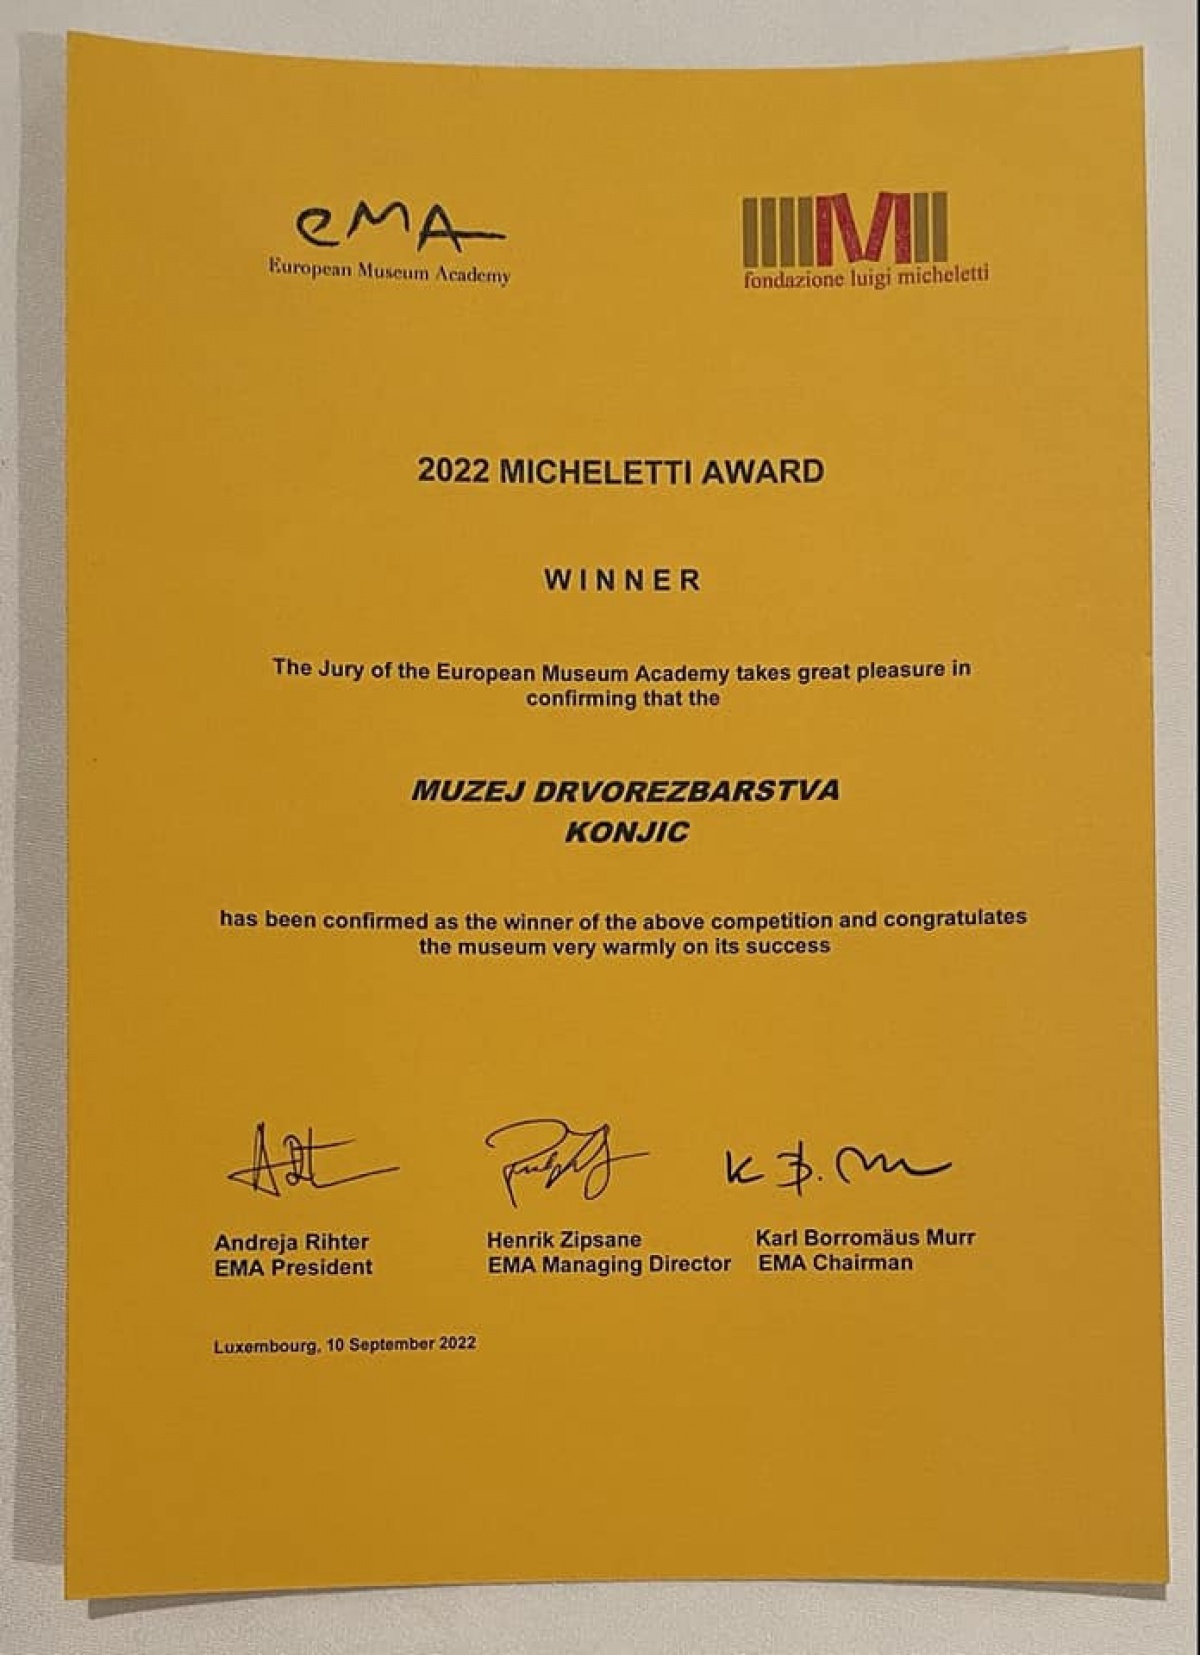 Čestitka u povodu dodjele prve nagrade Evropske muzejske akademije Luigi Micheletti 2022 Muzeju drvorezbarstva Konjic